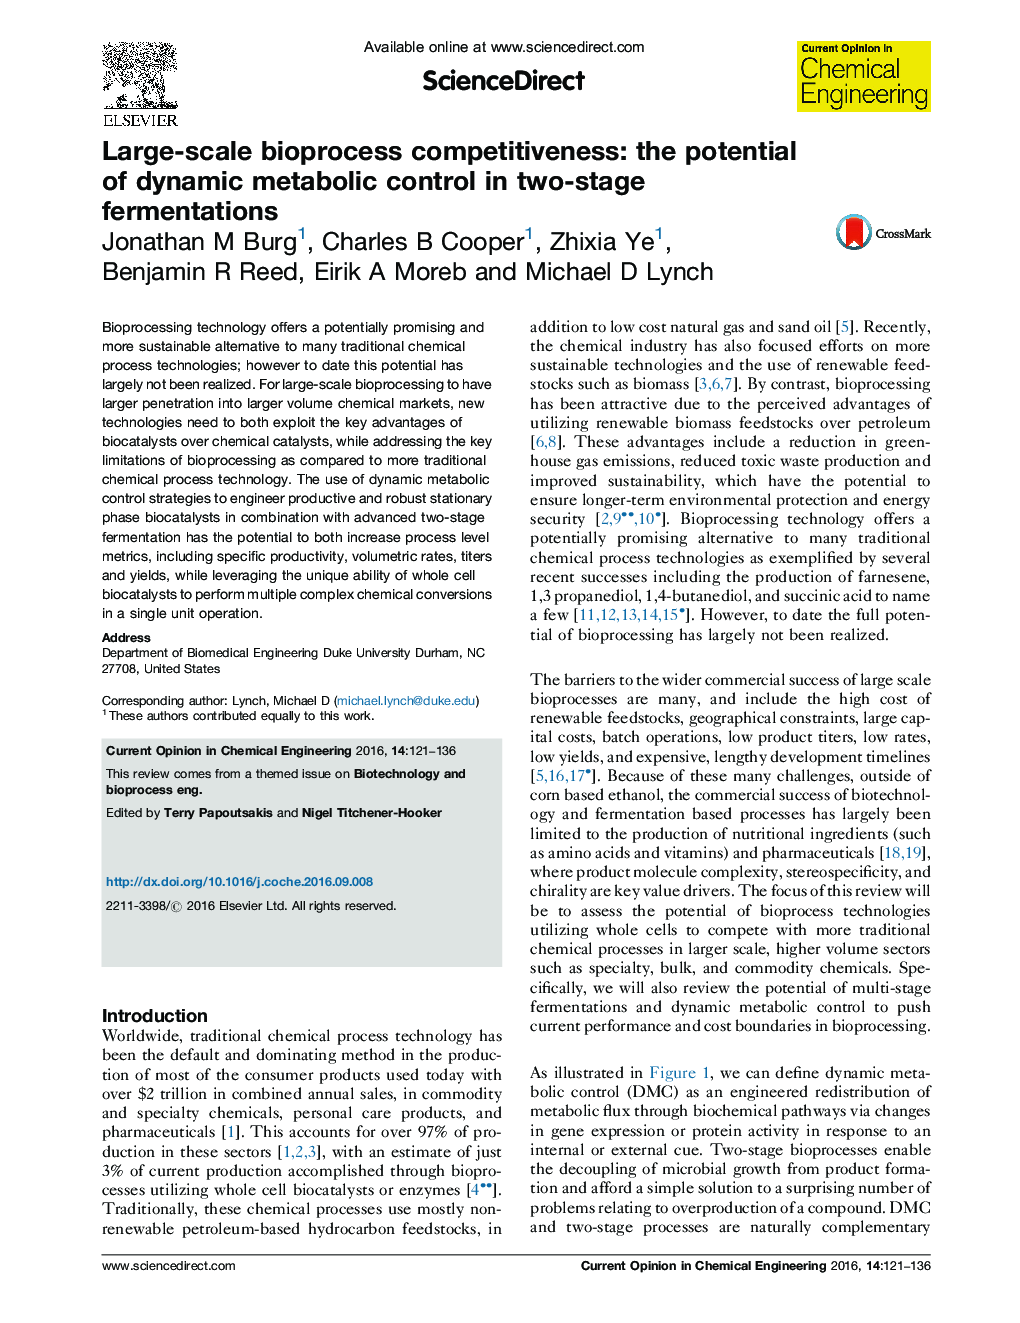 رقابت پذیری بیولوژیک در مقیاس بزرگ: پتانسیل کنترل متابولیک پویا در دو مرحله تخمیر 